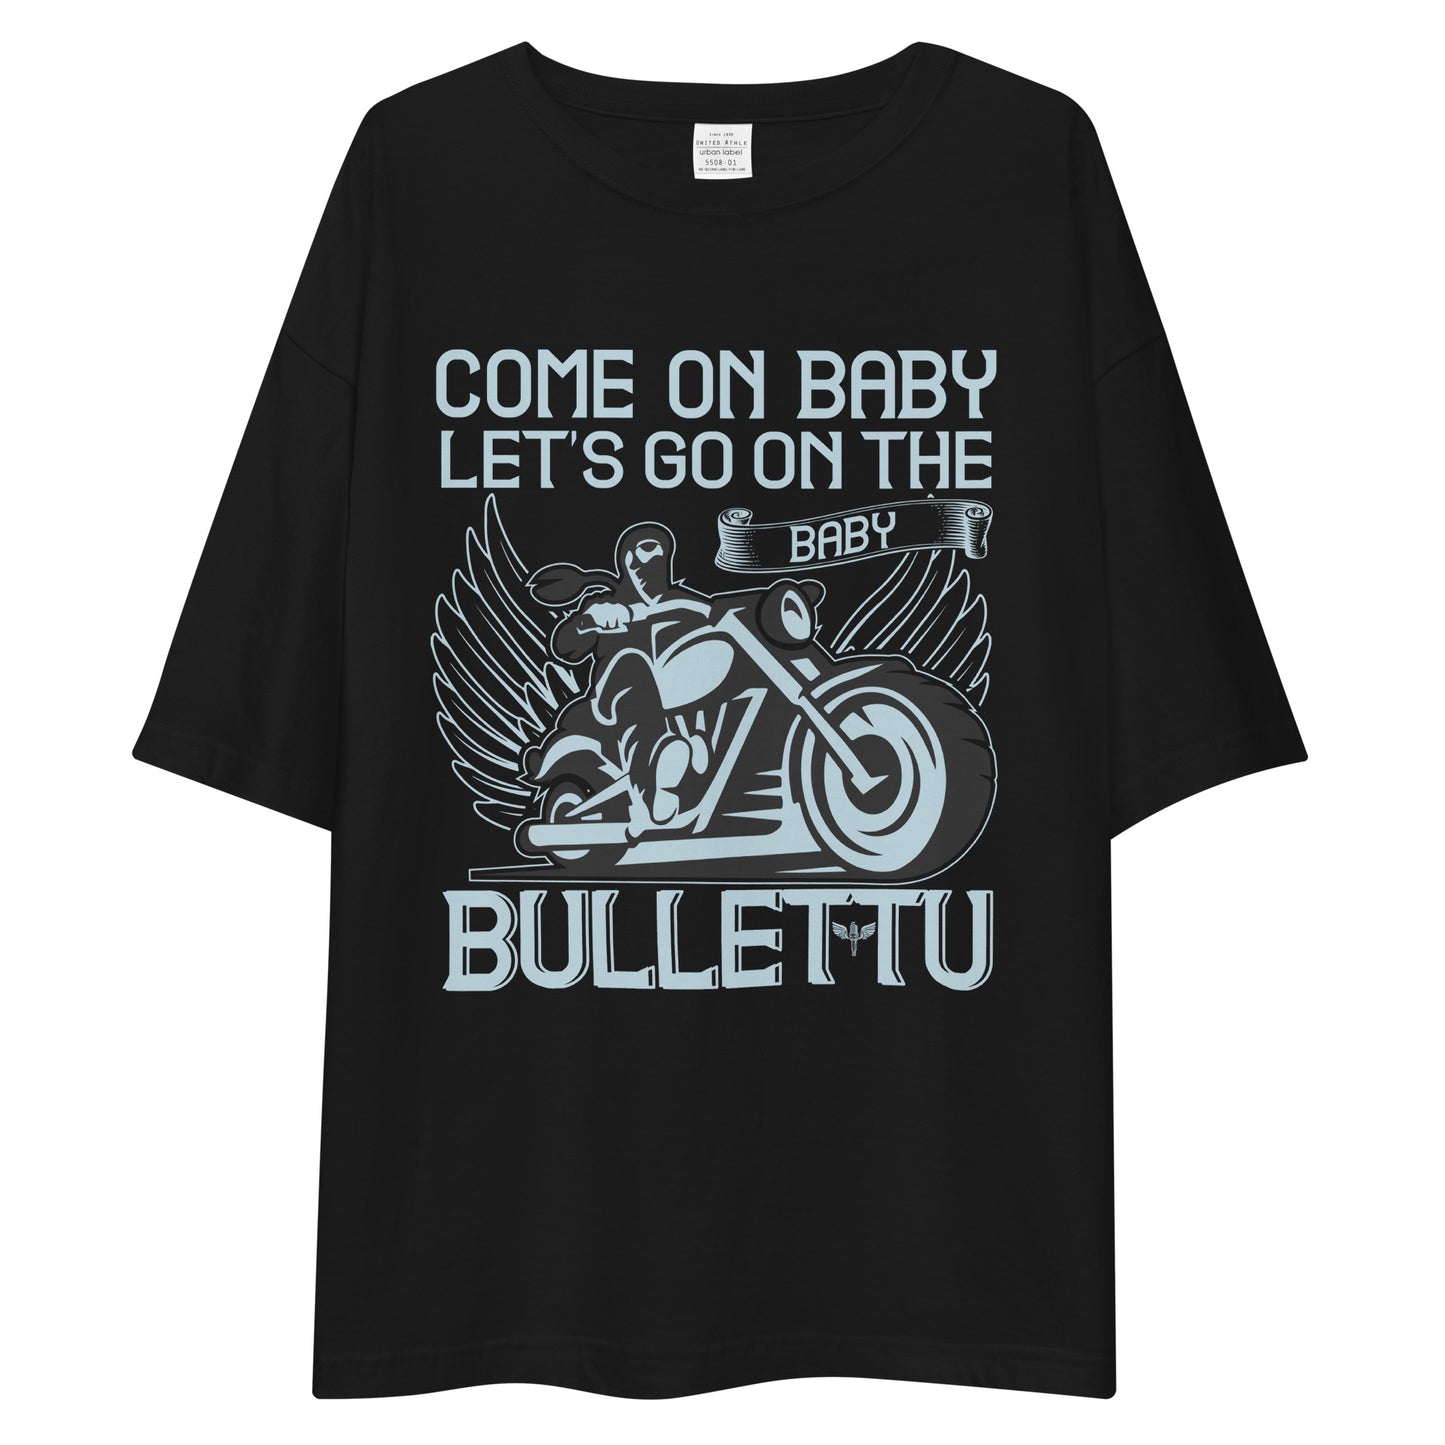 Unisex oversized t-shirt "Common Baby"